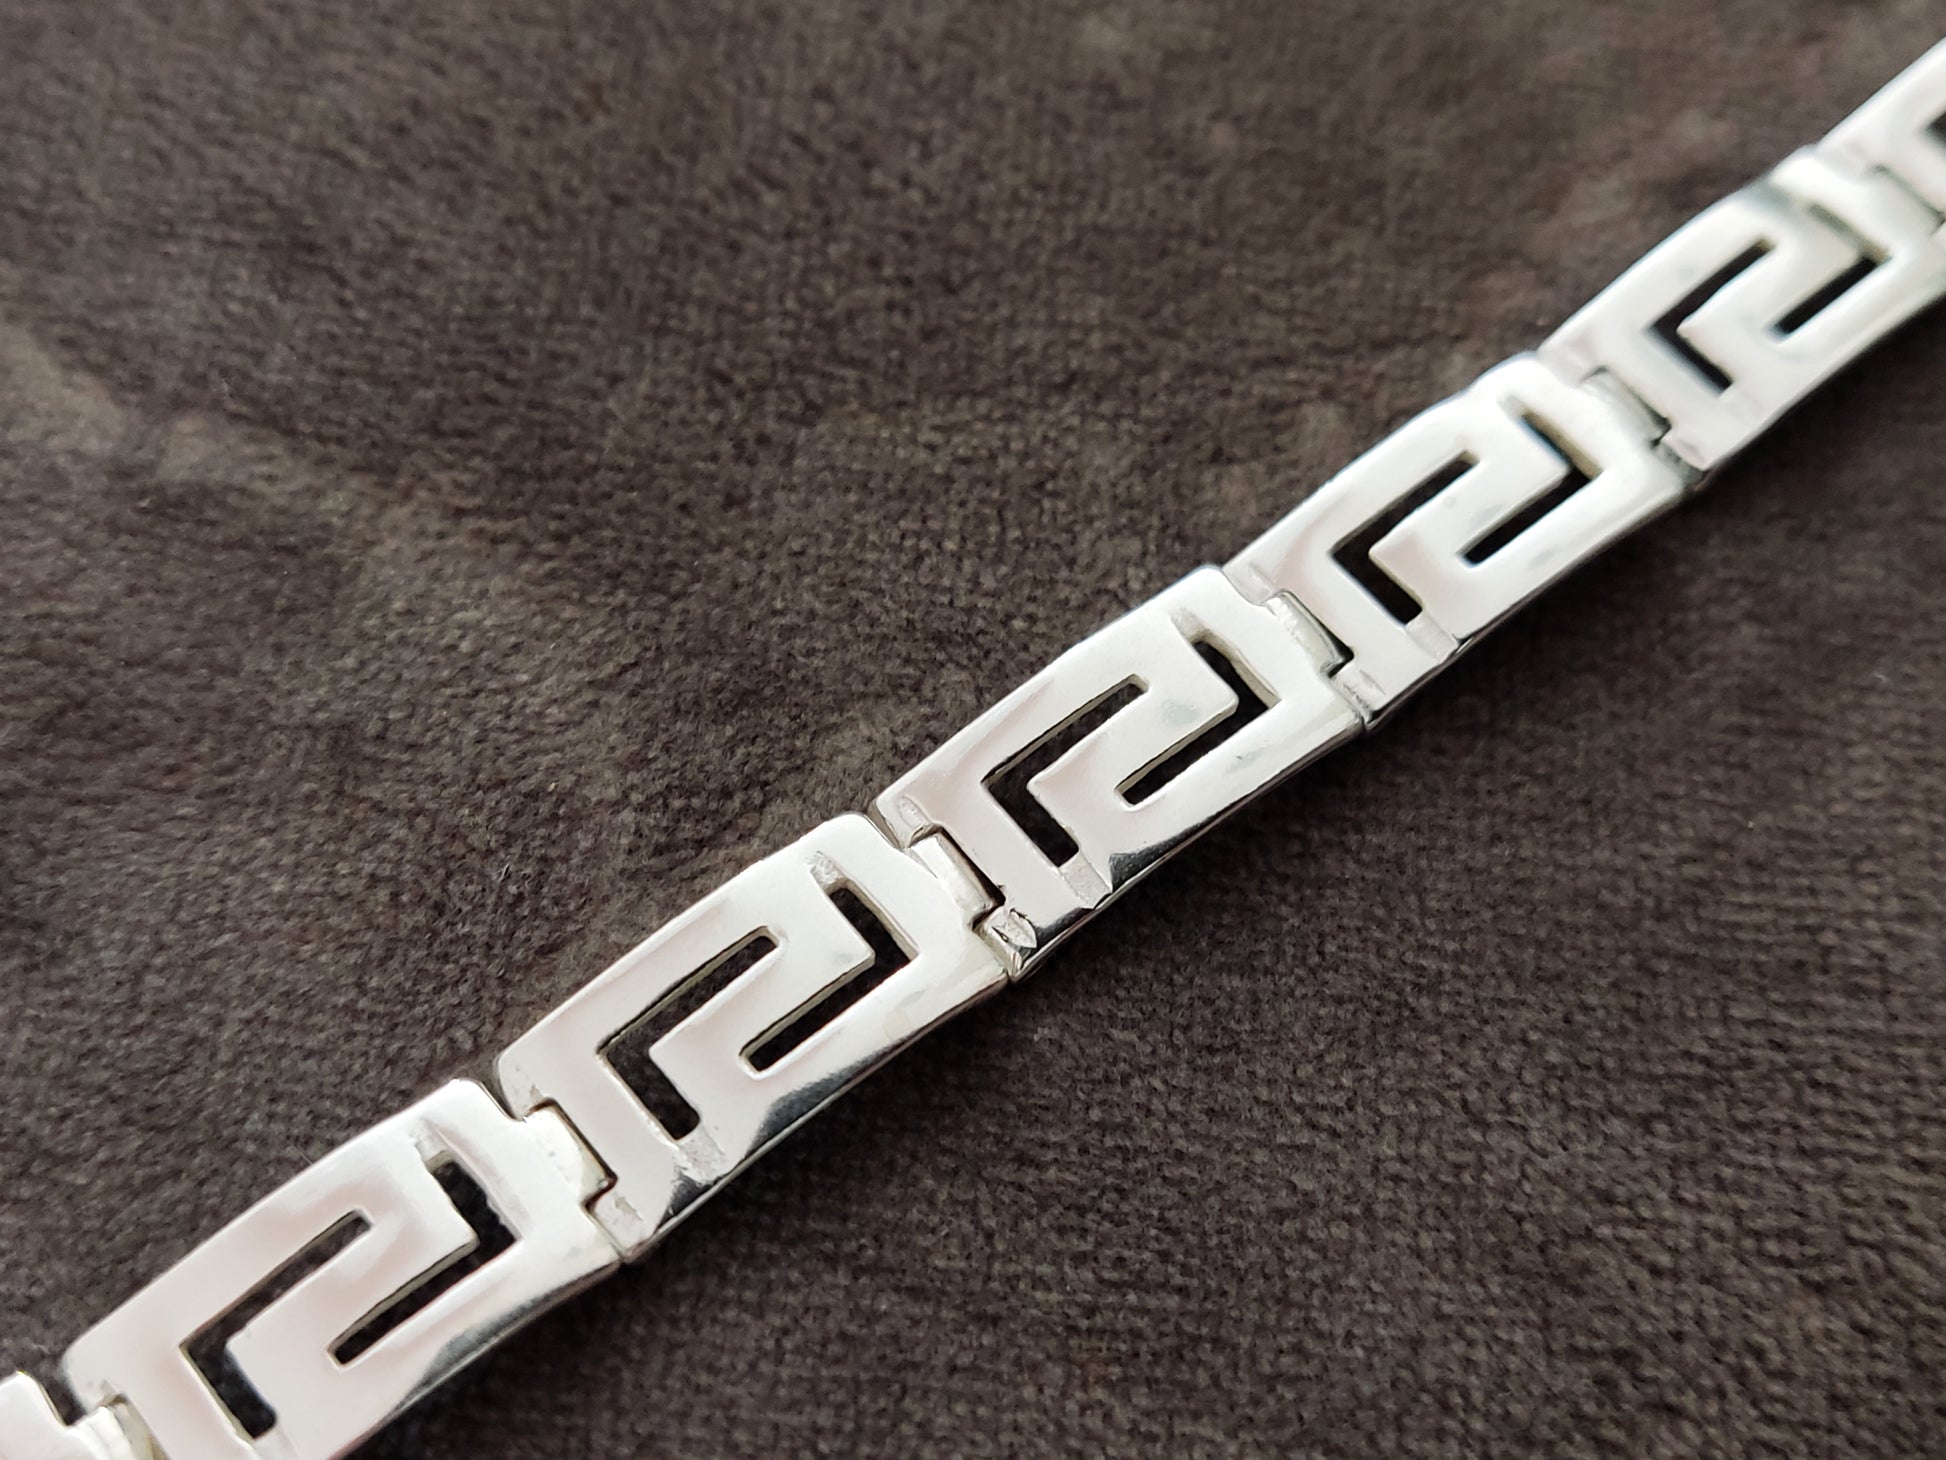 Greek key bracelet for men and women made of sterling silver 925 measuring 9mm width on gray velvet background.